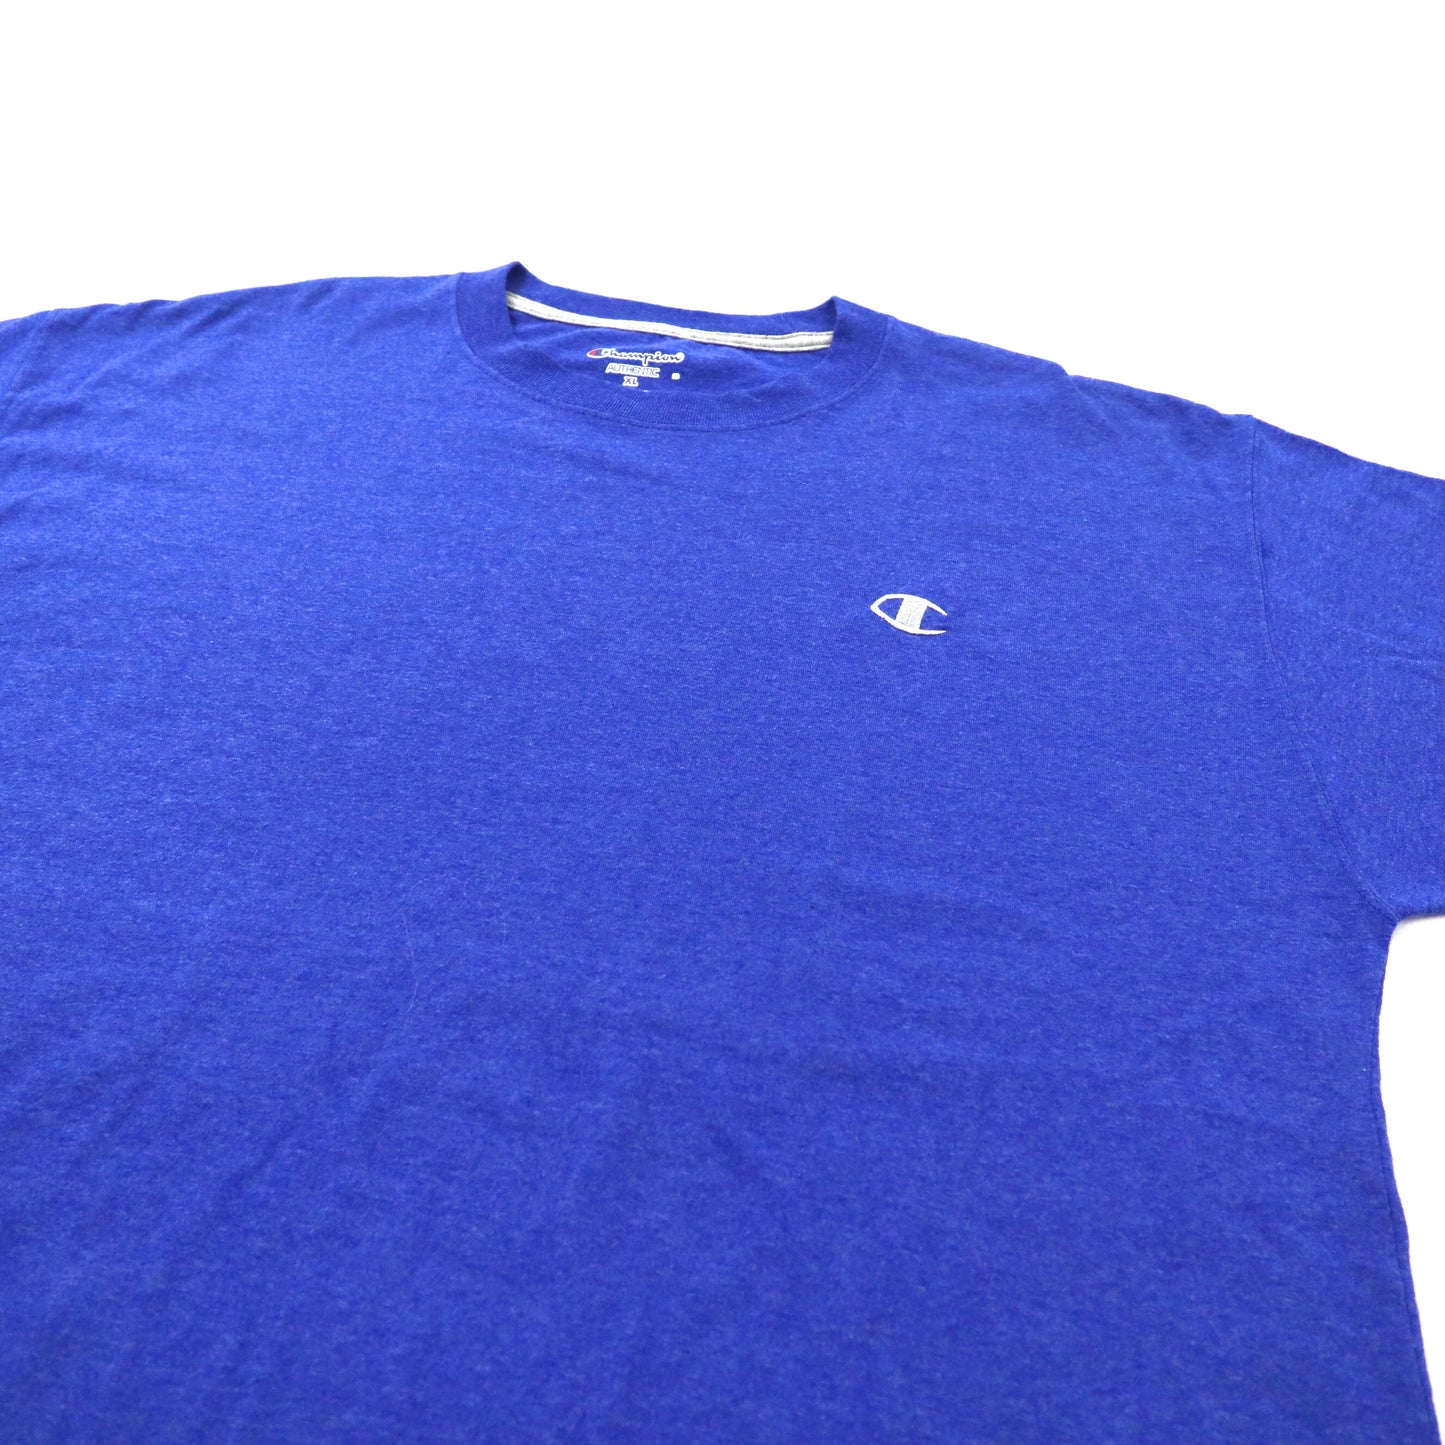 Champion ビッグサイズ ワンポイントロゴTシャツ 2XL ブルー コットン ホンジュラス製